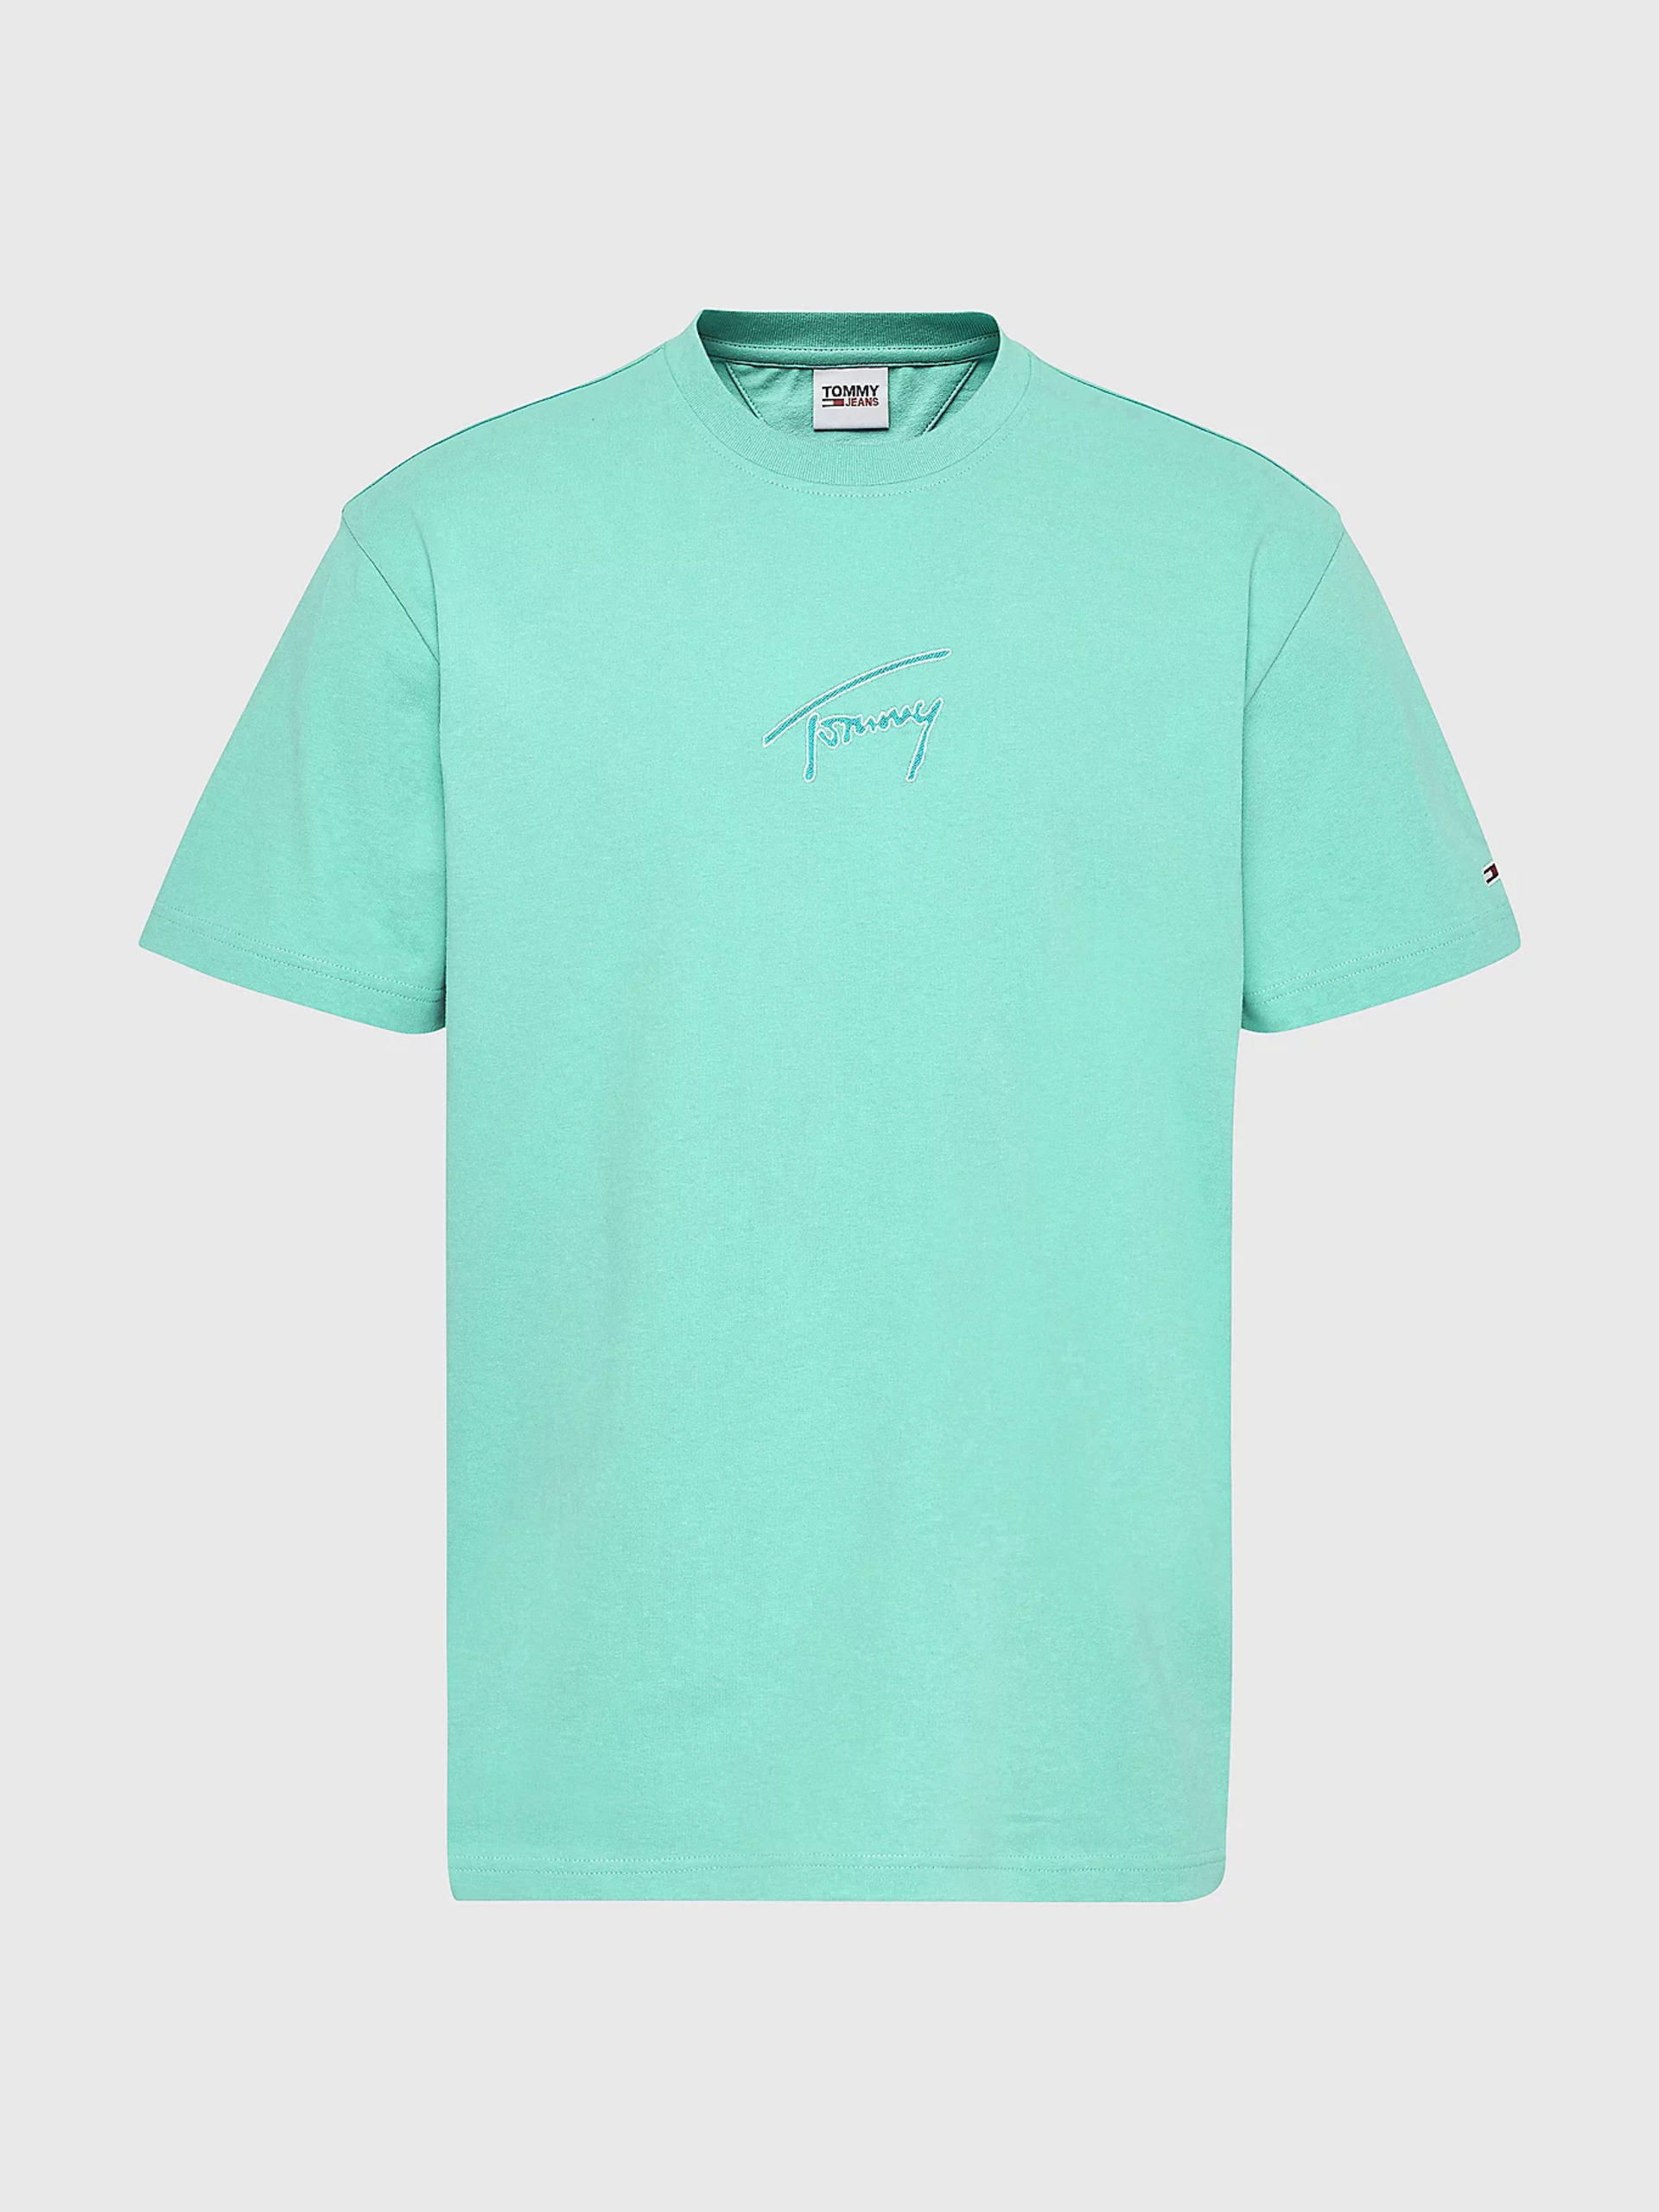 Tommy Jeans pánské zelené triko SIGNATURE  - L (L67)